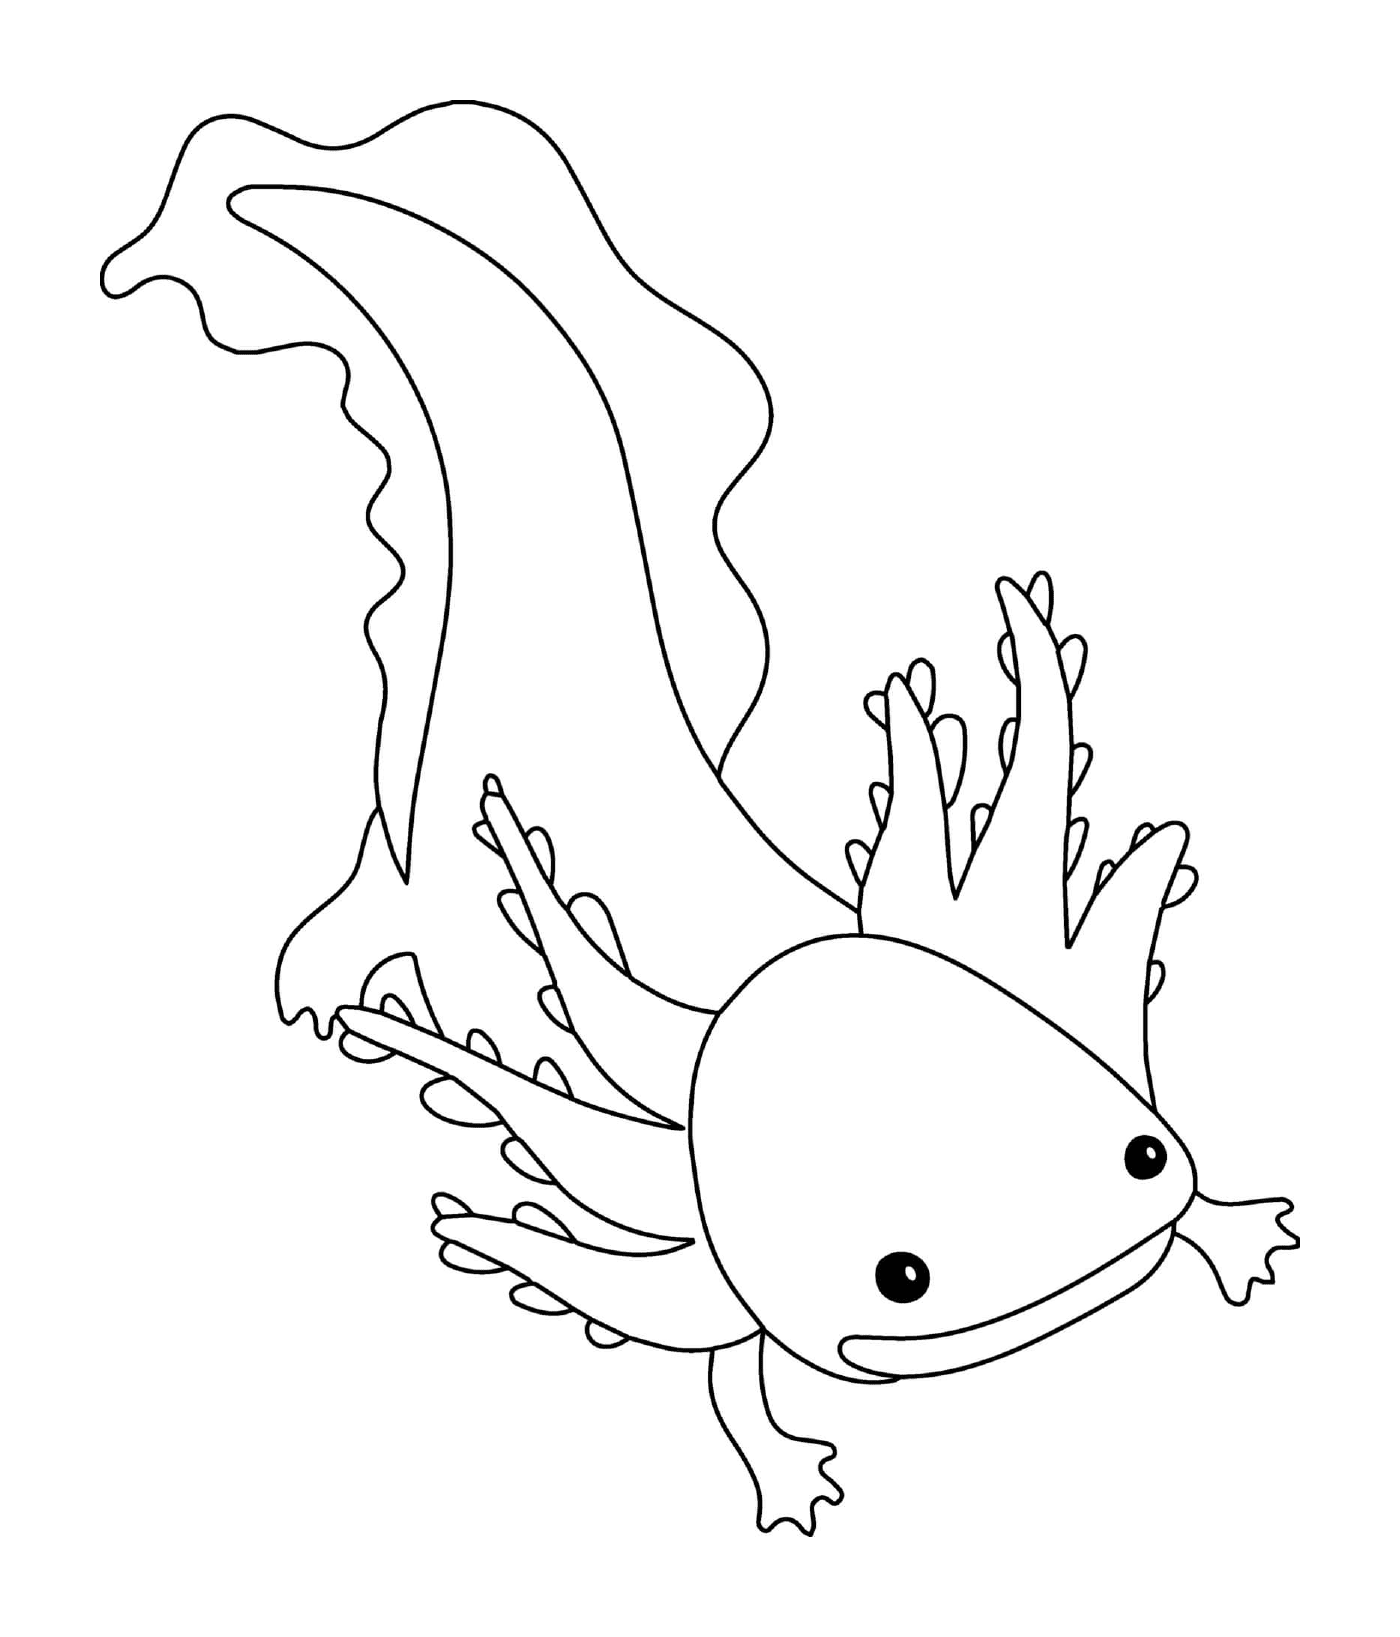  Axolotl never metamorphosing 